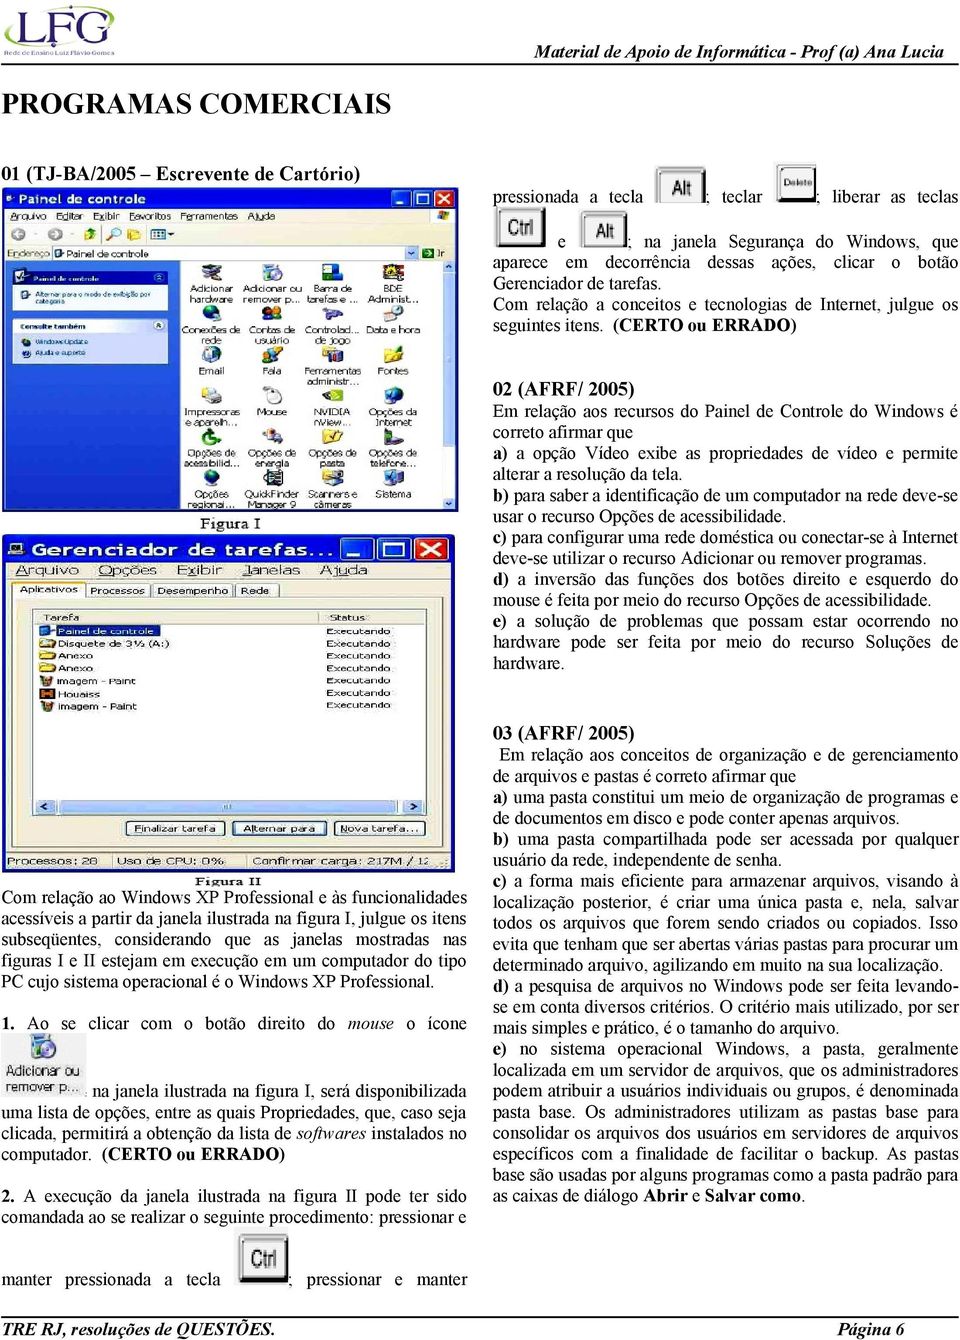 02 (AFRF/ 2005) Em relação aos recursos do Painel de Controle do Windows é correto afirmar que a) a opção Vídeo exibe as propriedades de vídeo e permite alterar a resolução da tela.